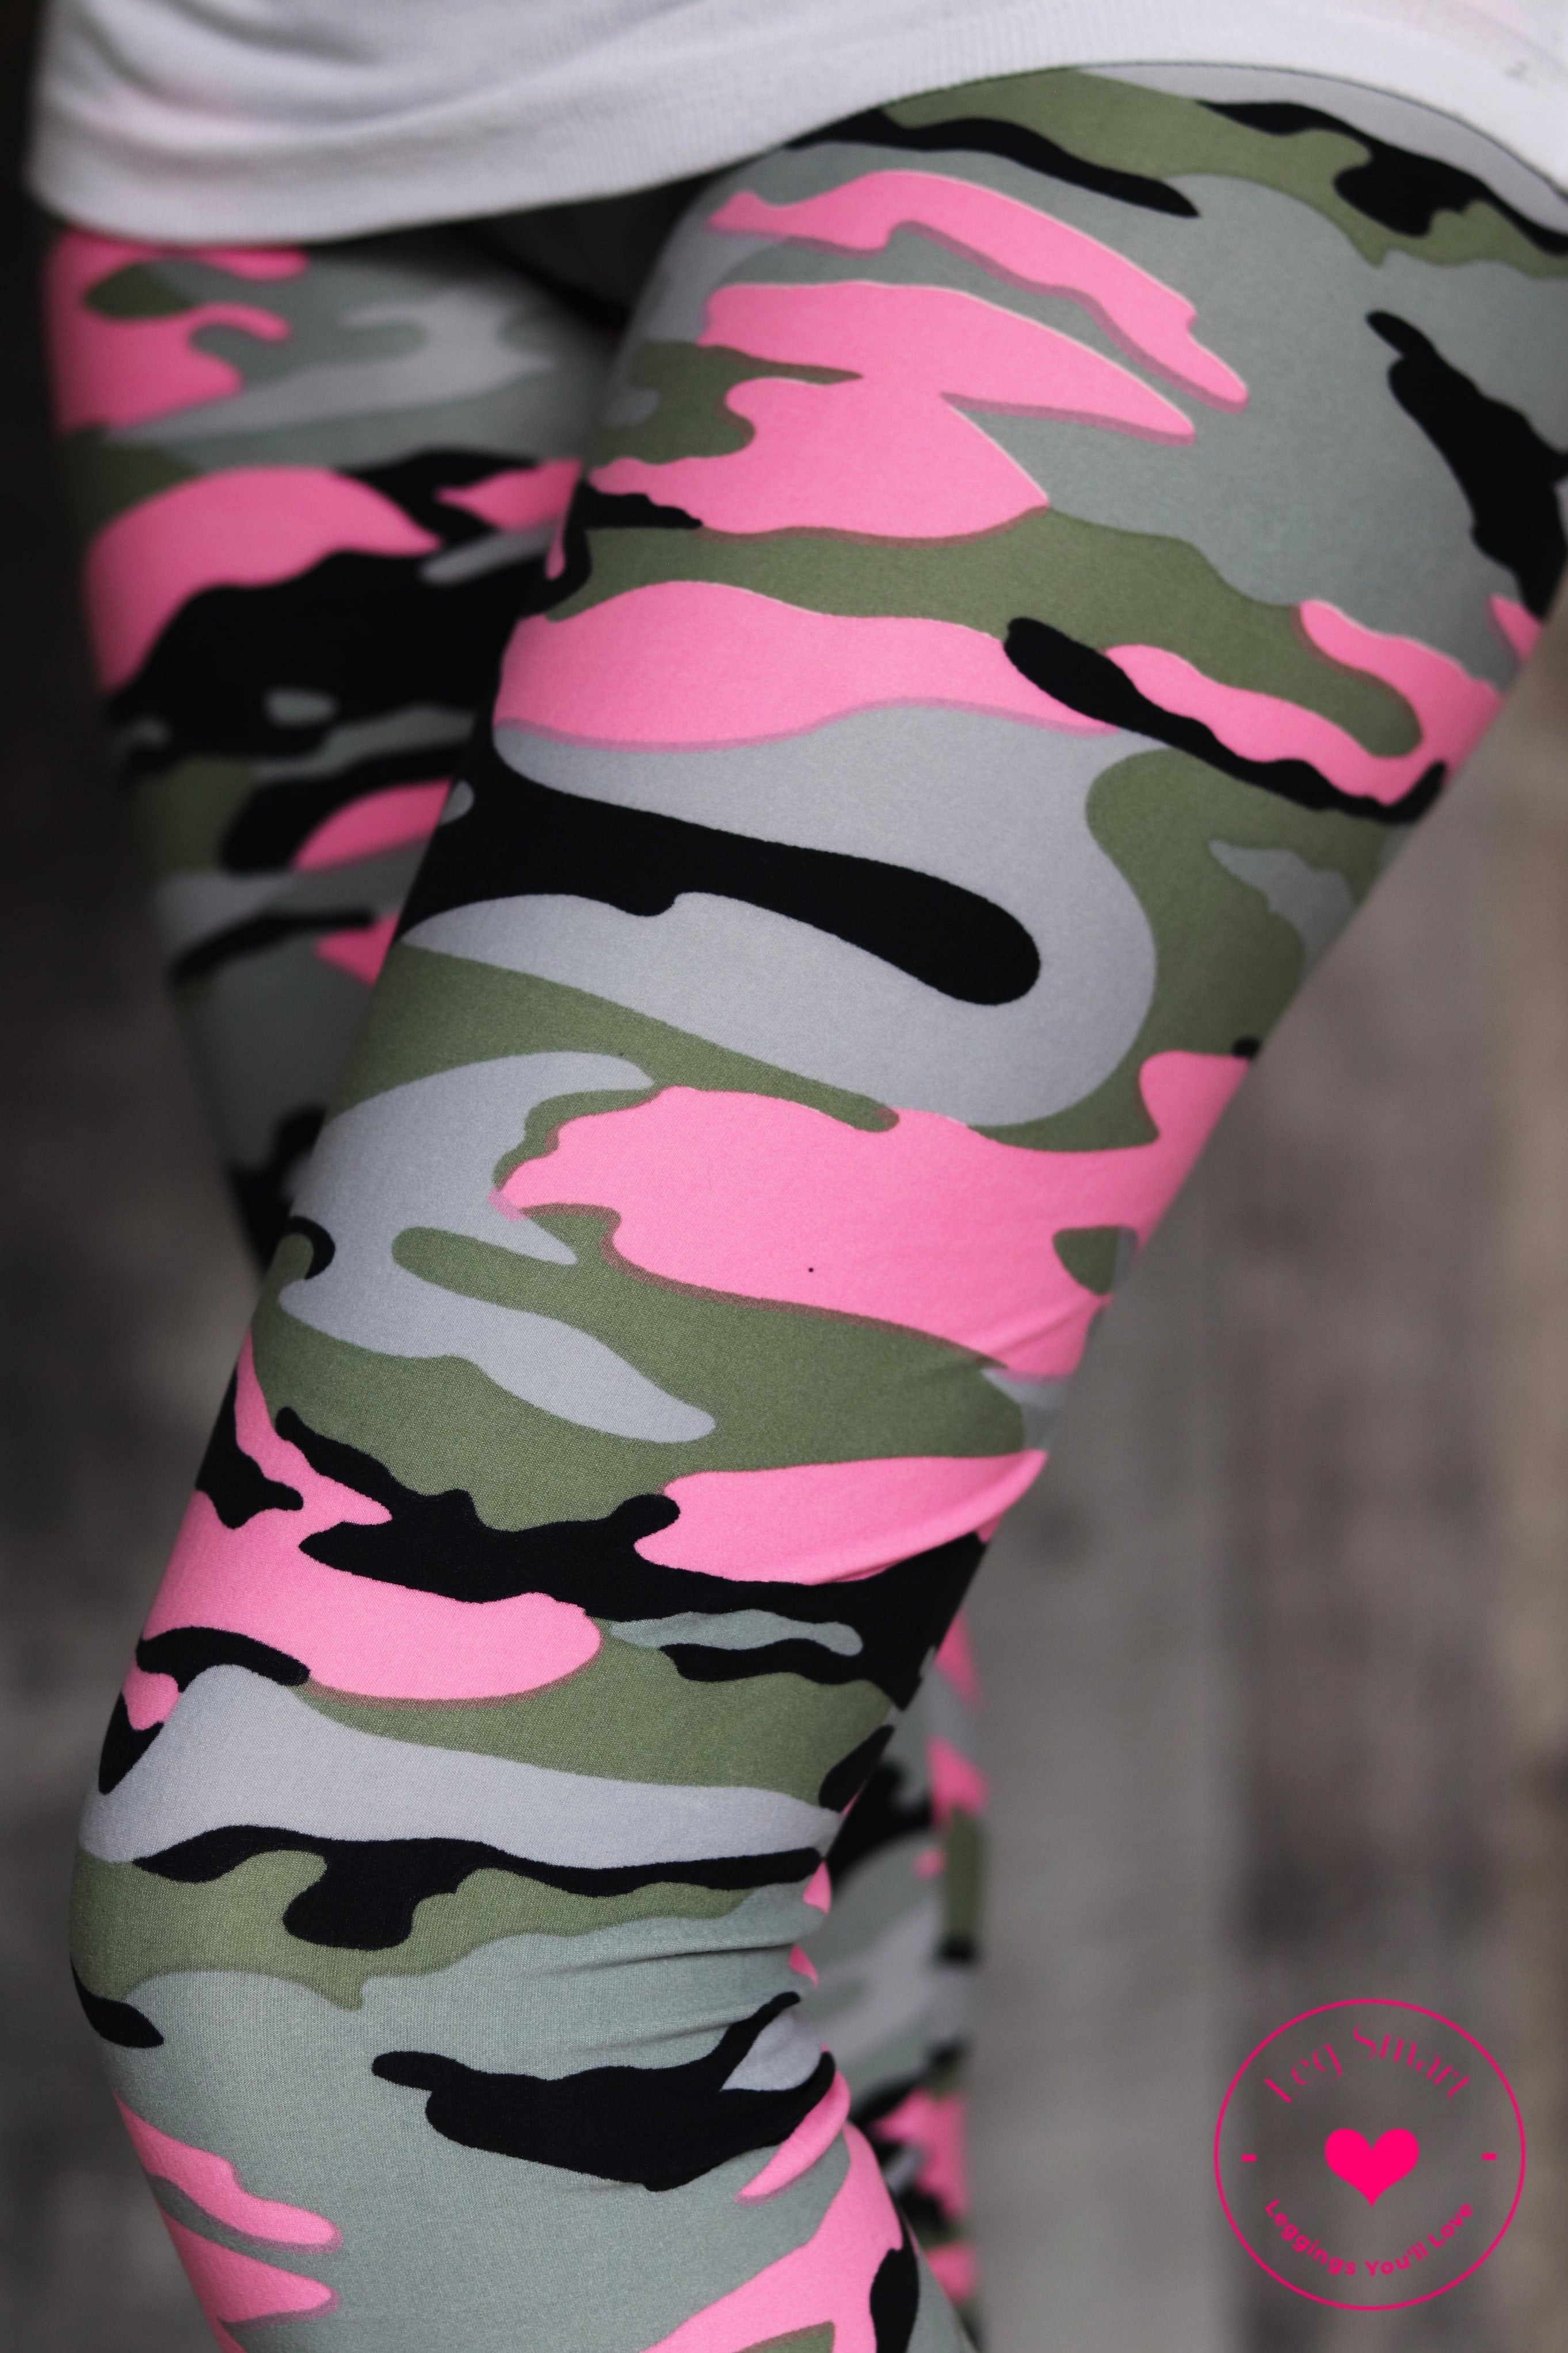 Girls' Leggings: Find Fun Colorful & Printed Leggings For Girls